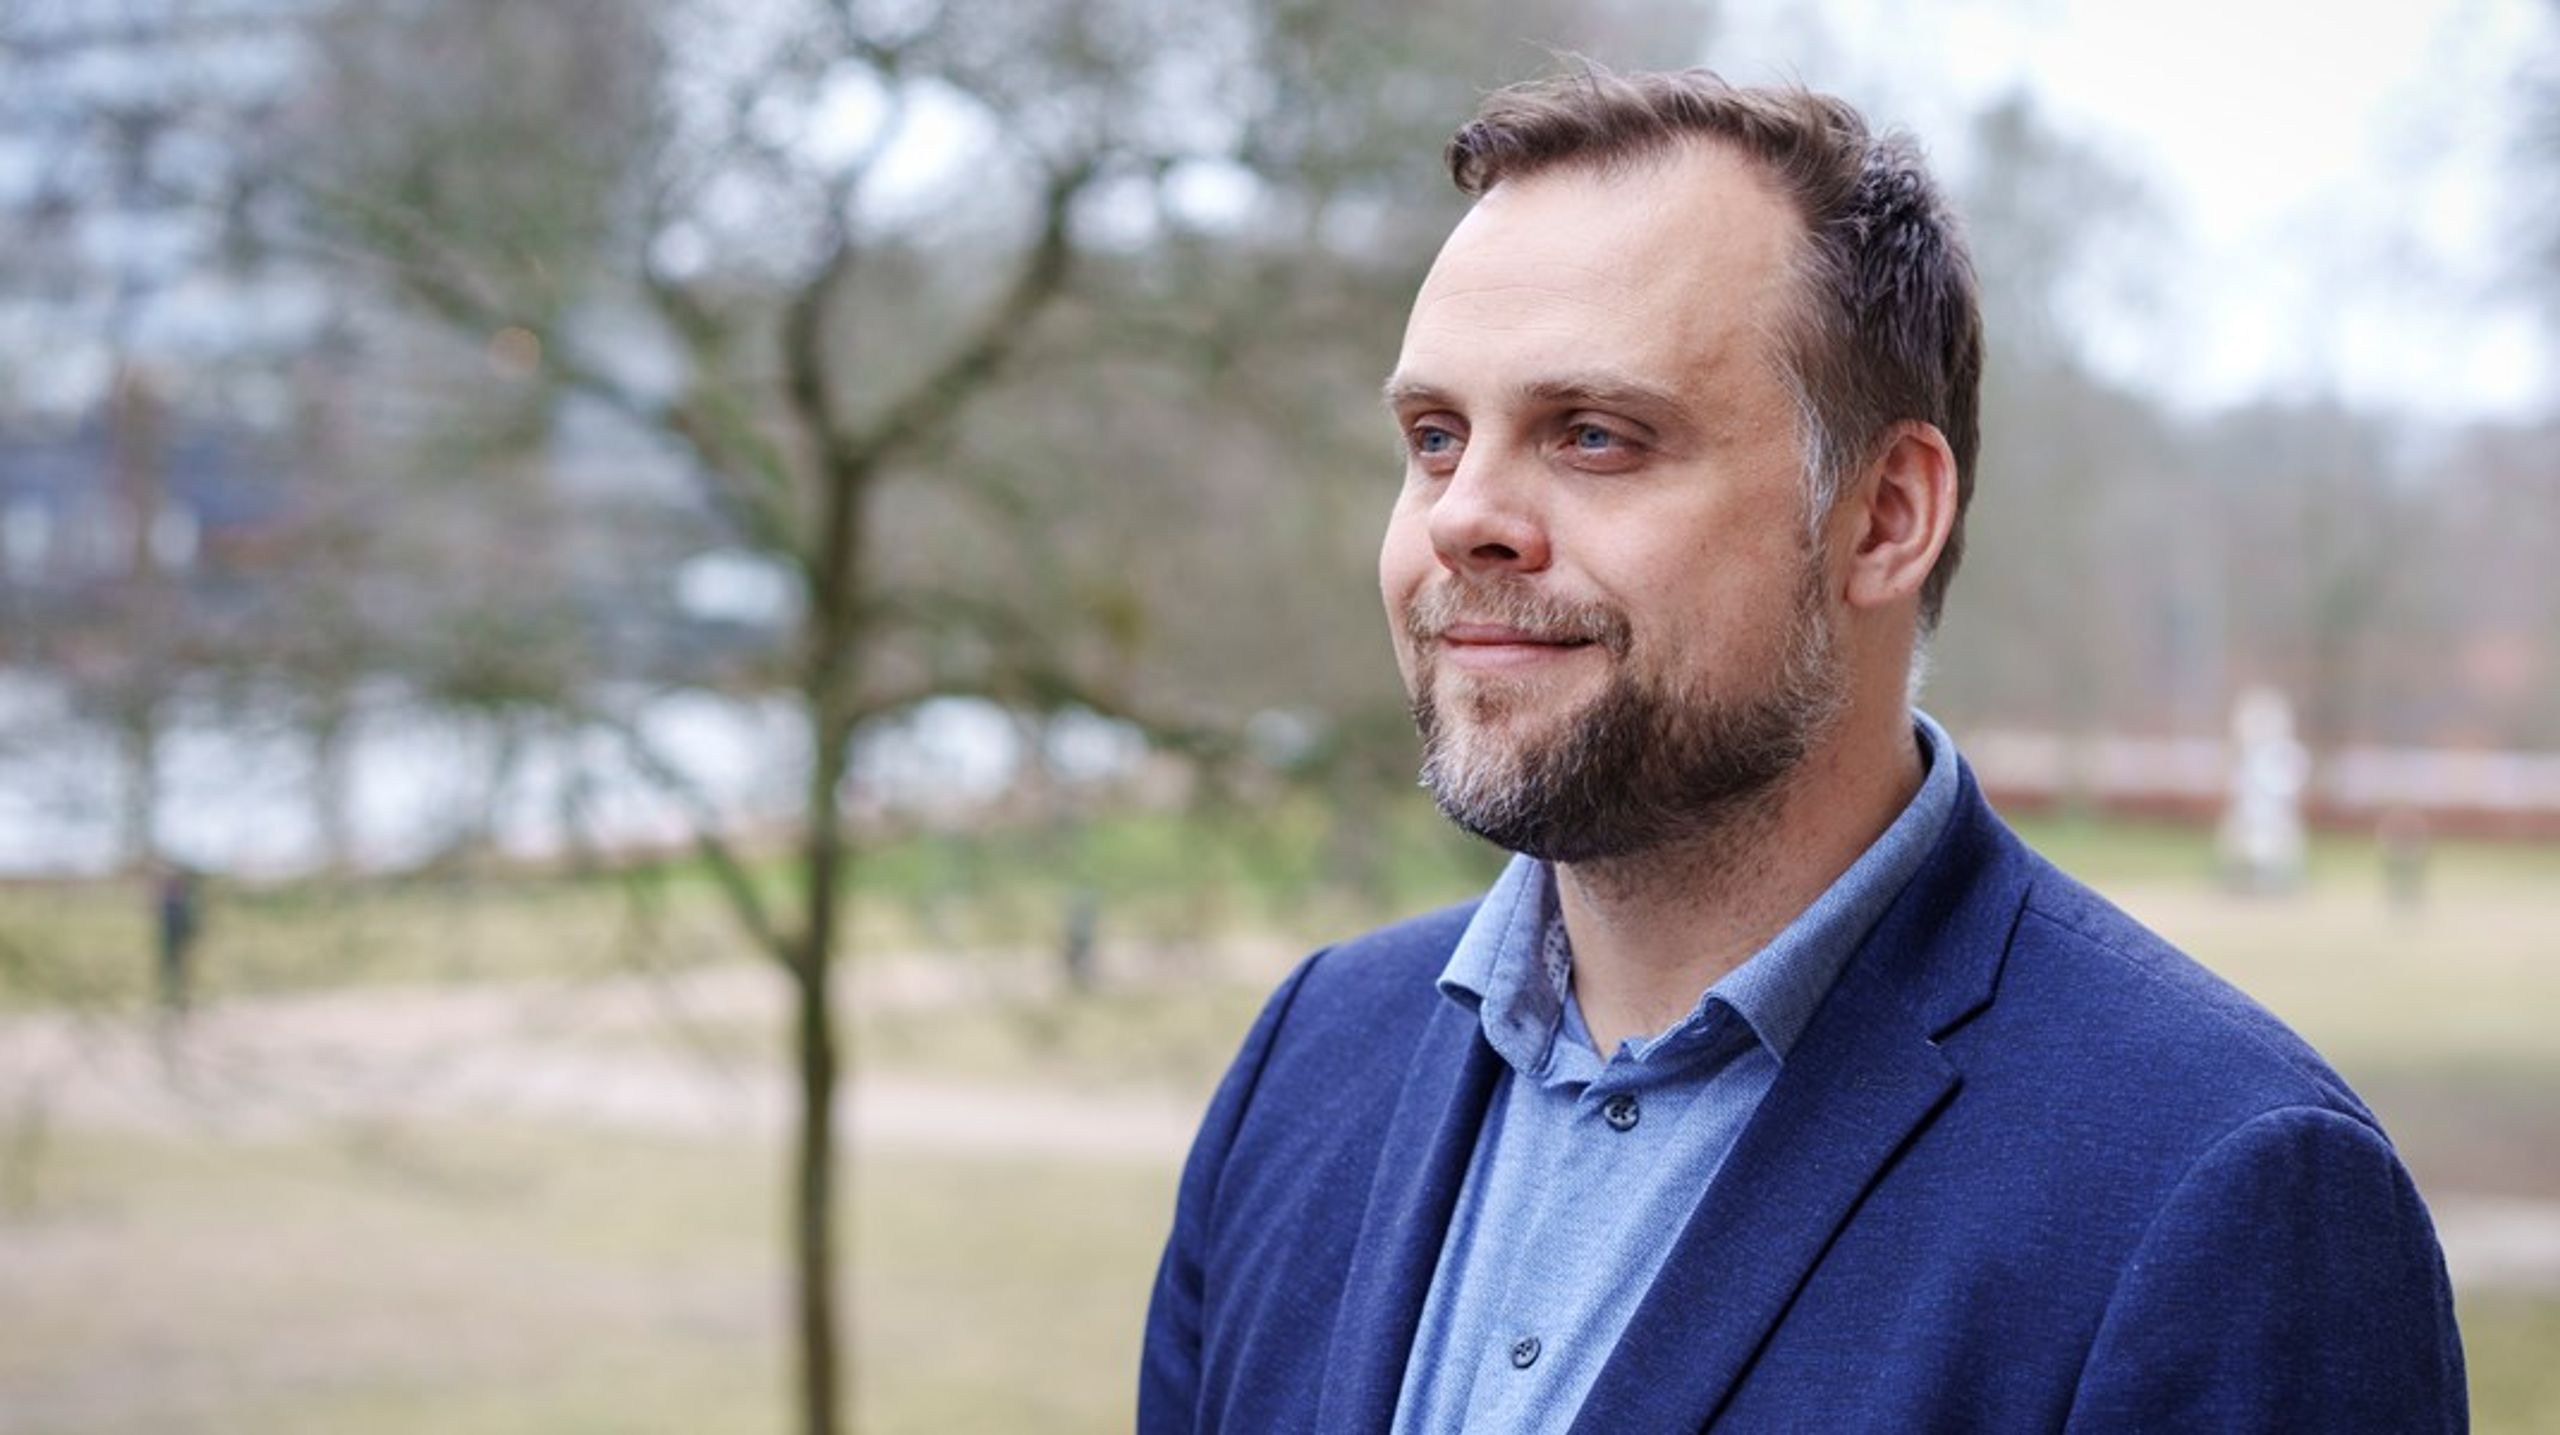 Borgmester i Halsnæs Kommune, Steffen Jensen, trækker stikket for en periode på tre uger, som skyldes overbelastning.